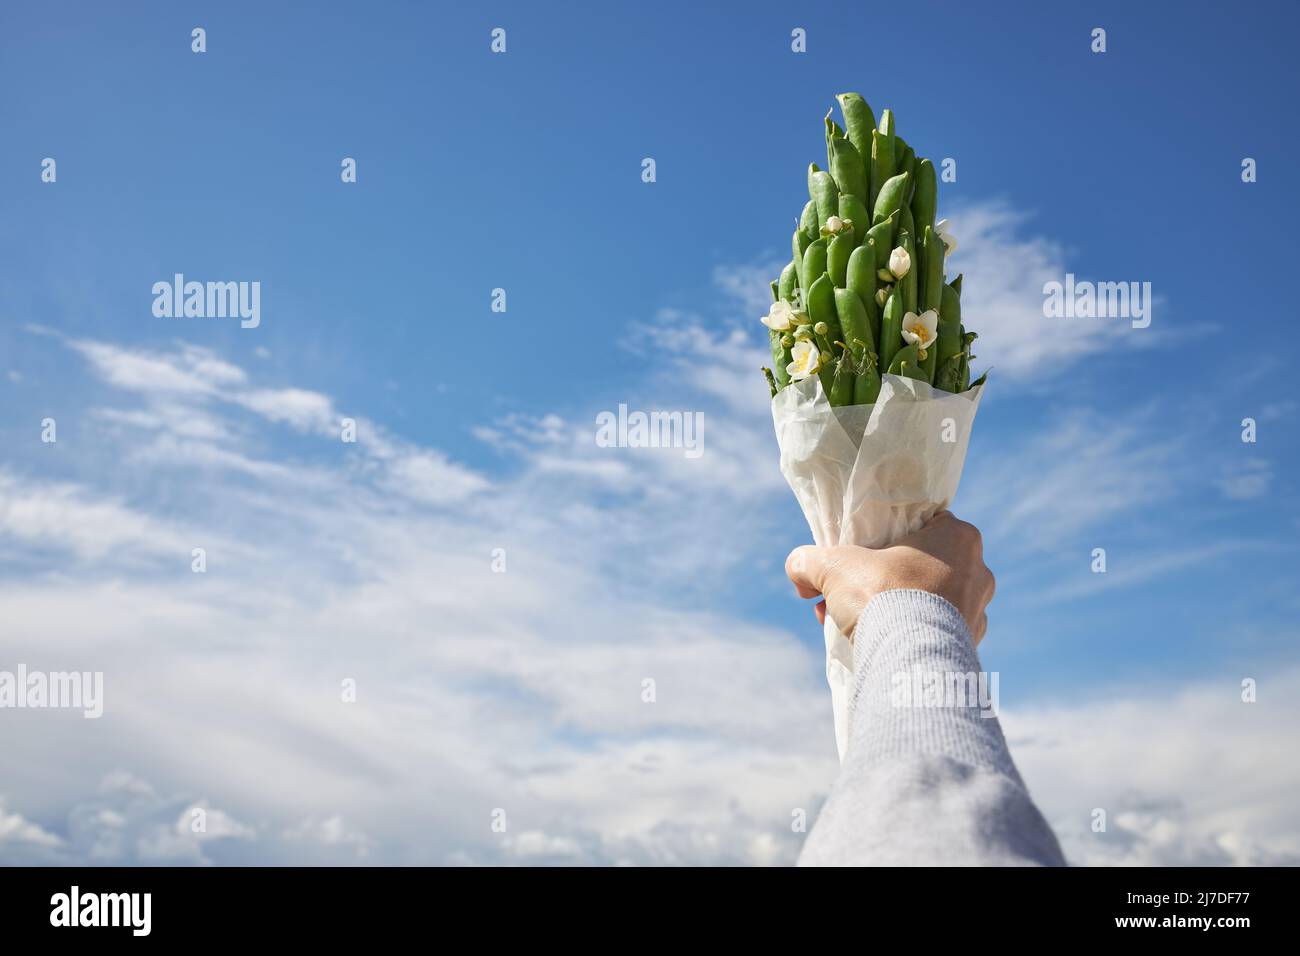 Un pequeño ramo de vainas de guisantes verdes contra un cielo azul en una mano Foto de stock